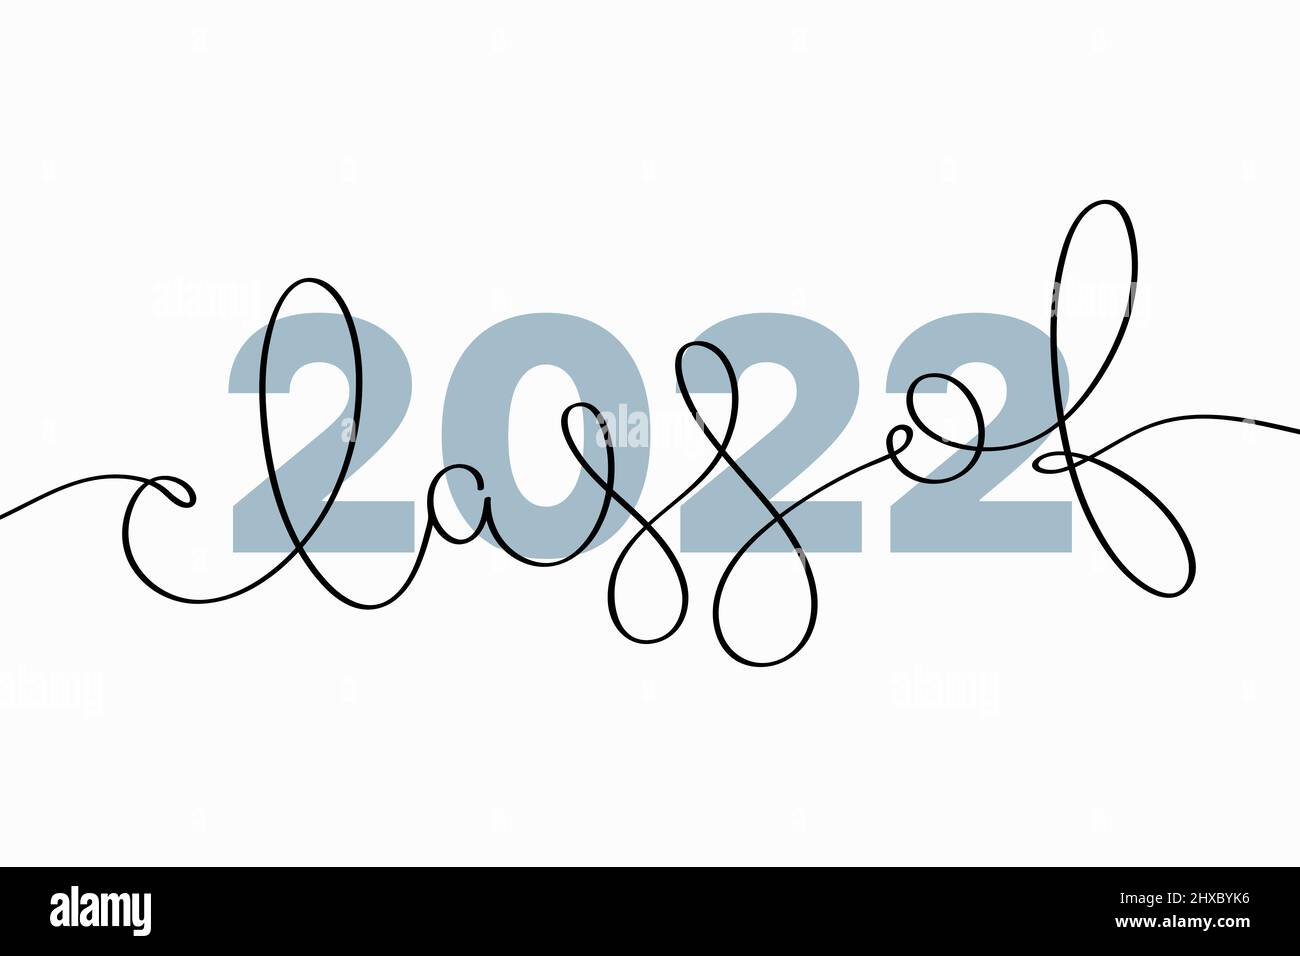 Schriftklasse 2022. Vektordarstellung kreativer Typografie mit durchgehendem, von Hand gezeichneter Text, isoliert auf weißem Hintergrund Stock Vektor